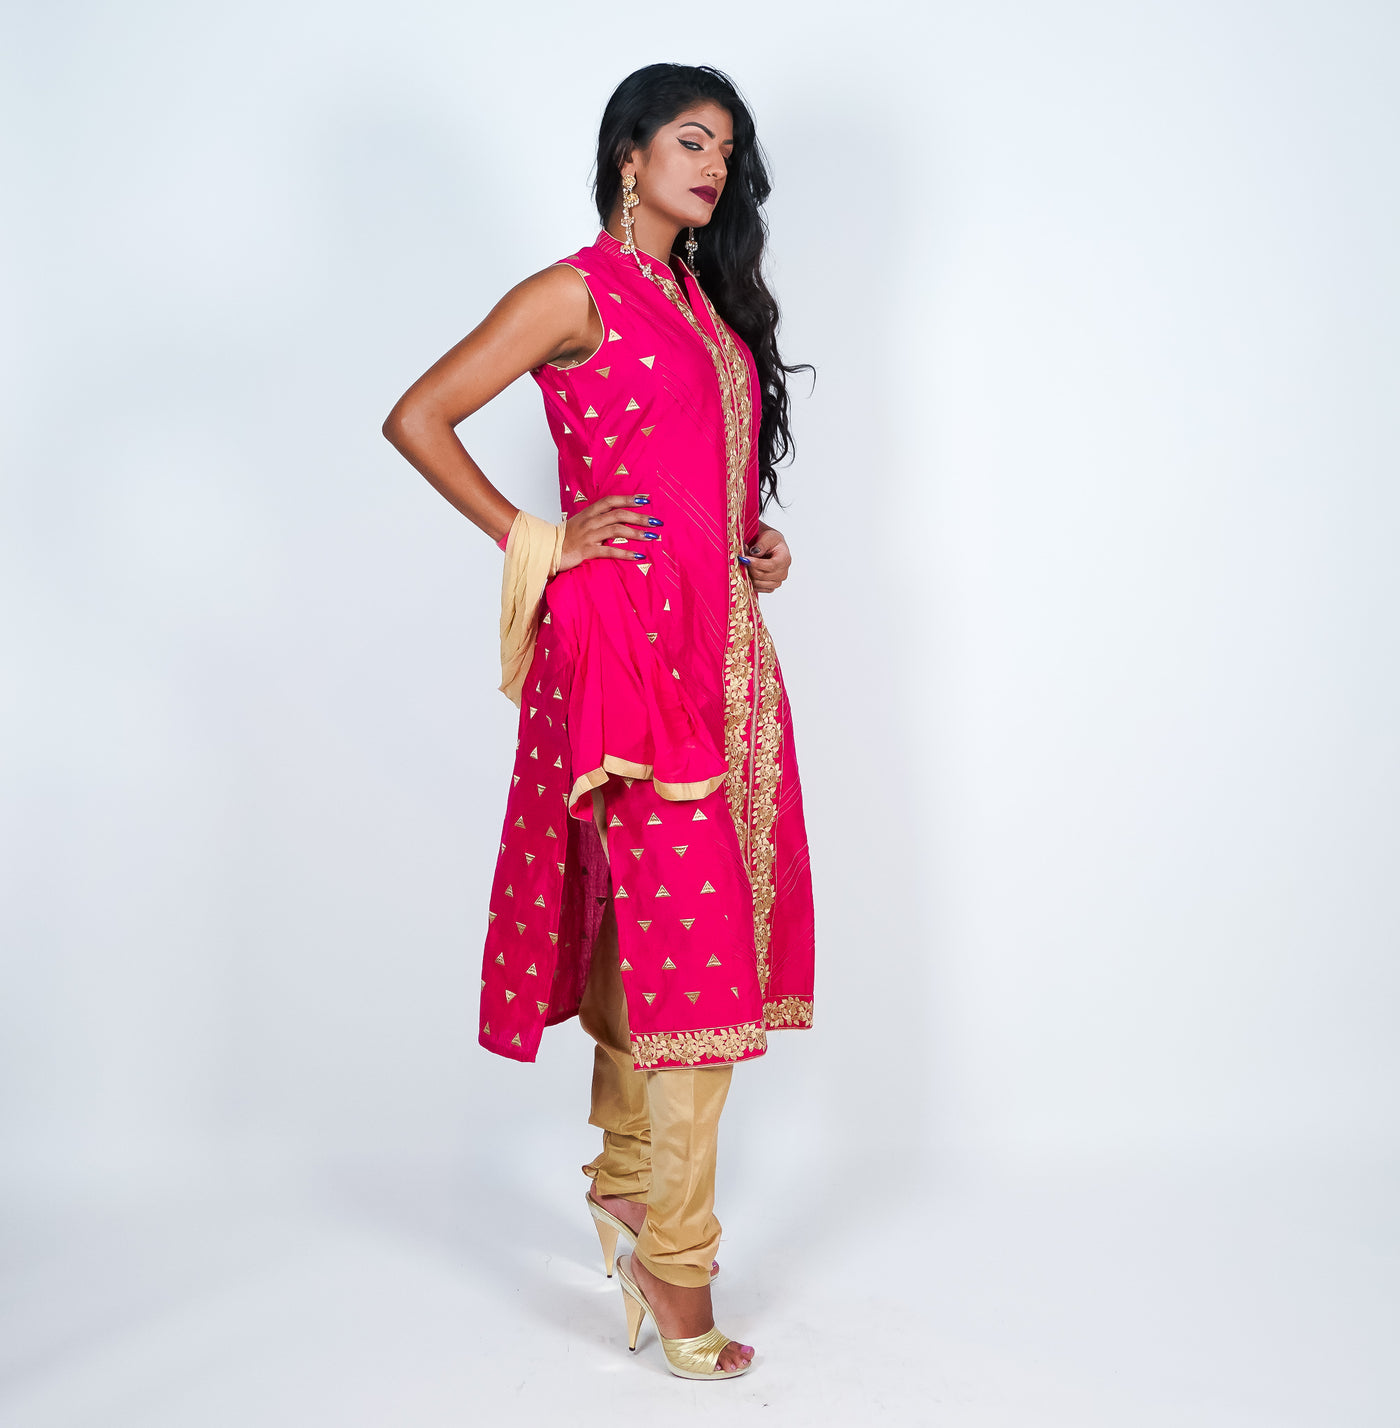 Panch Ratna Gold Star Cotton Casual Stylish Designer Wear Salwar Kamee